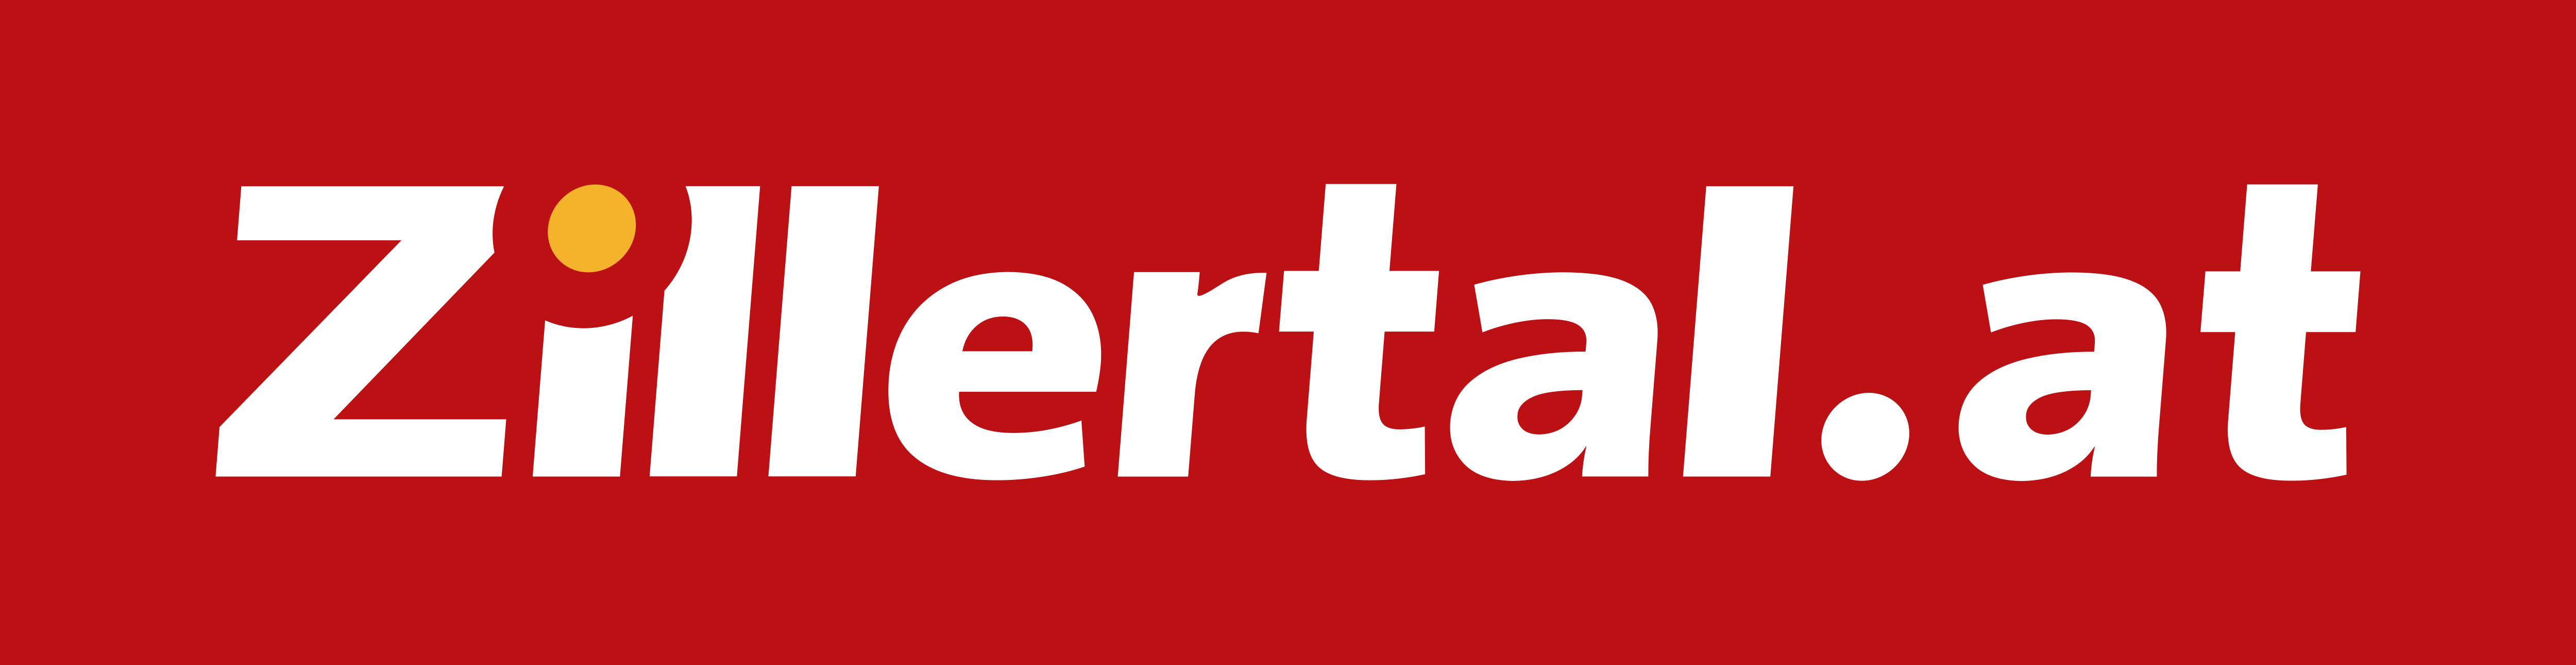 Pitztal Logo